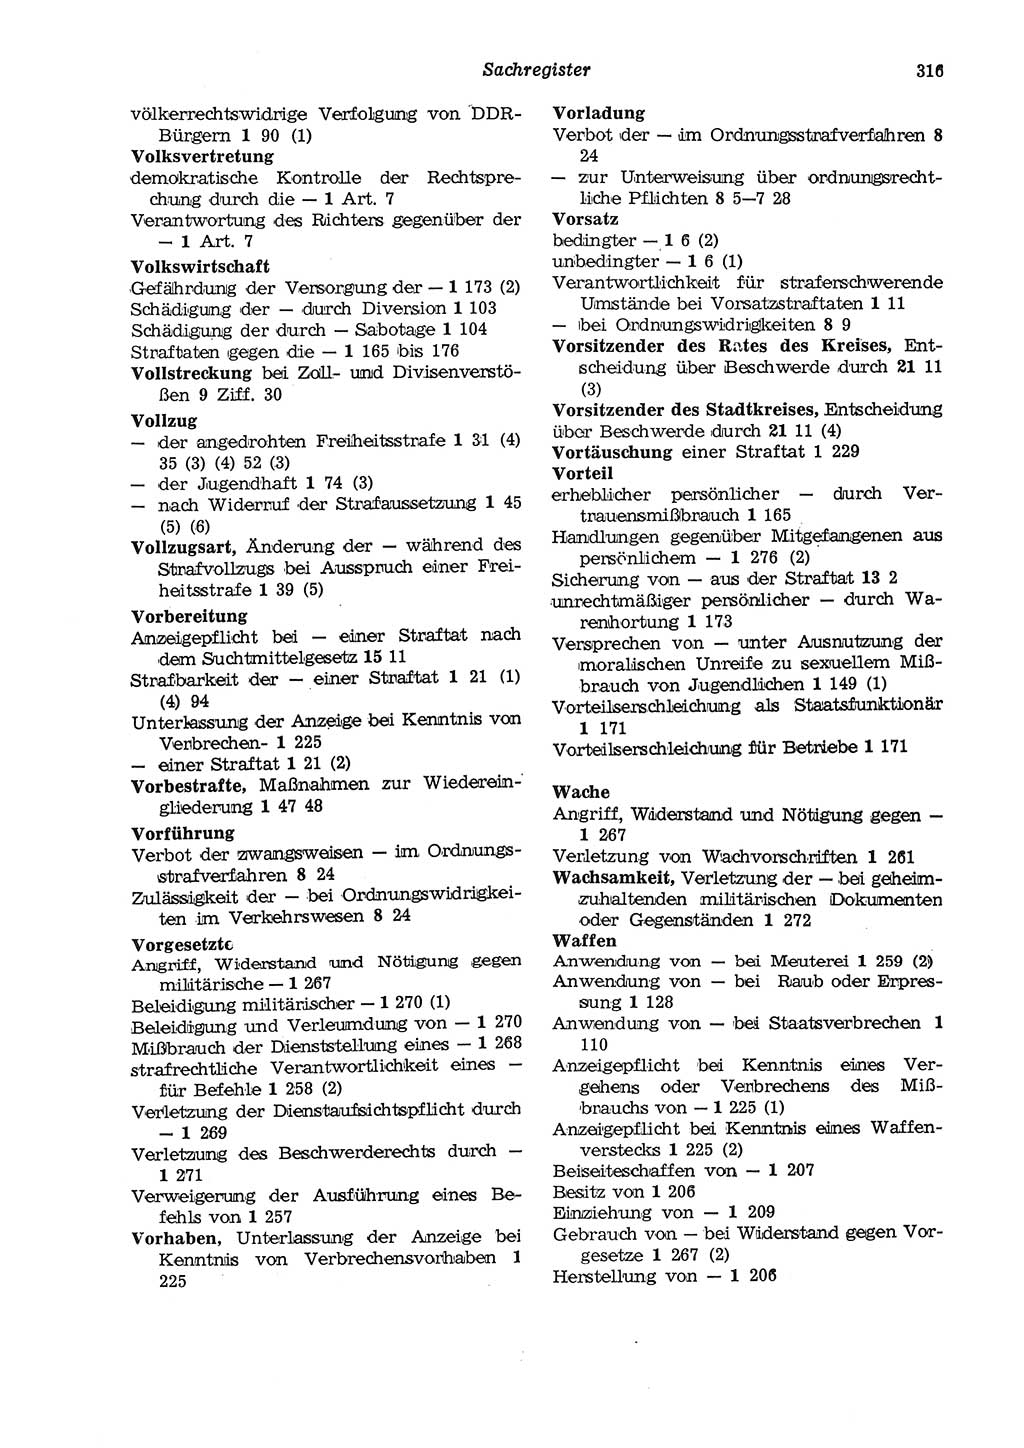 Strafgesetzbuch (StGB) der Deutschen Demokratischen Republik (DDR) und angrenzende Gesetze und Bestimmungen 1975, Seite 316 (StGB DDR Ges. Best. 1975, S. 316)